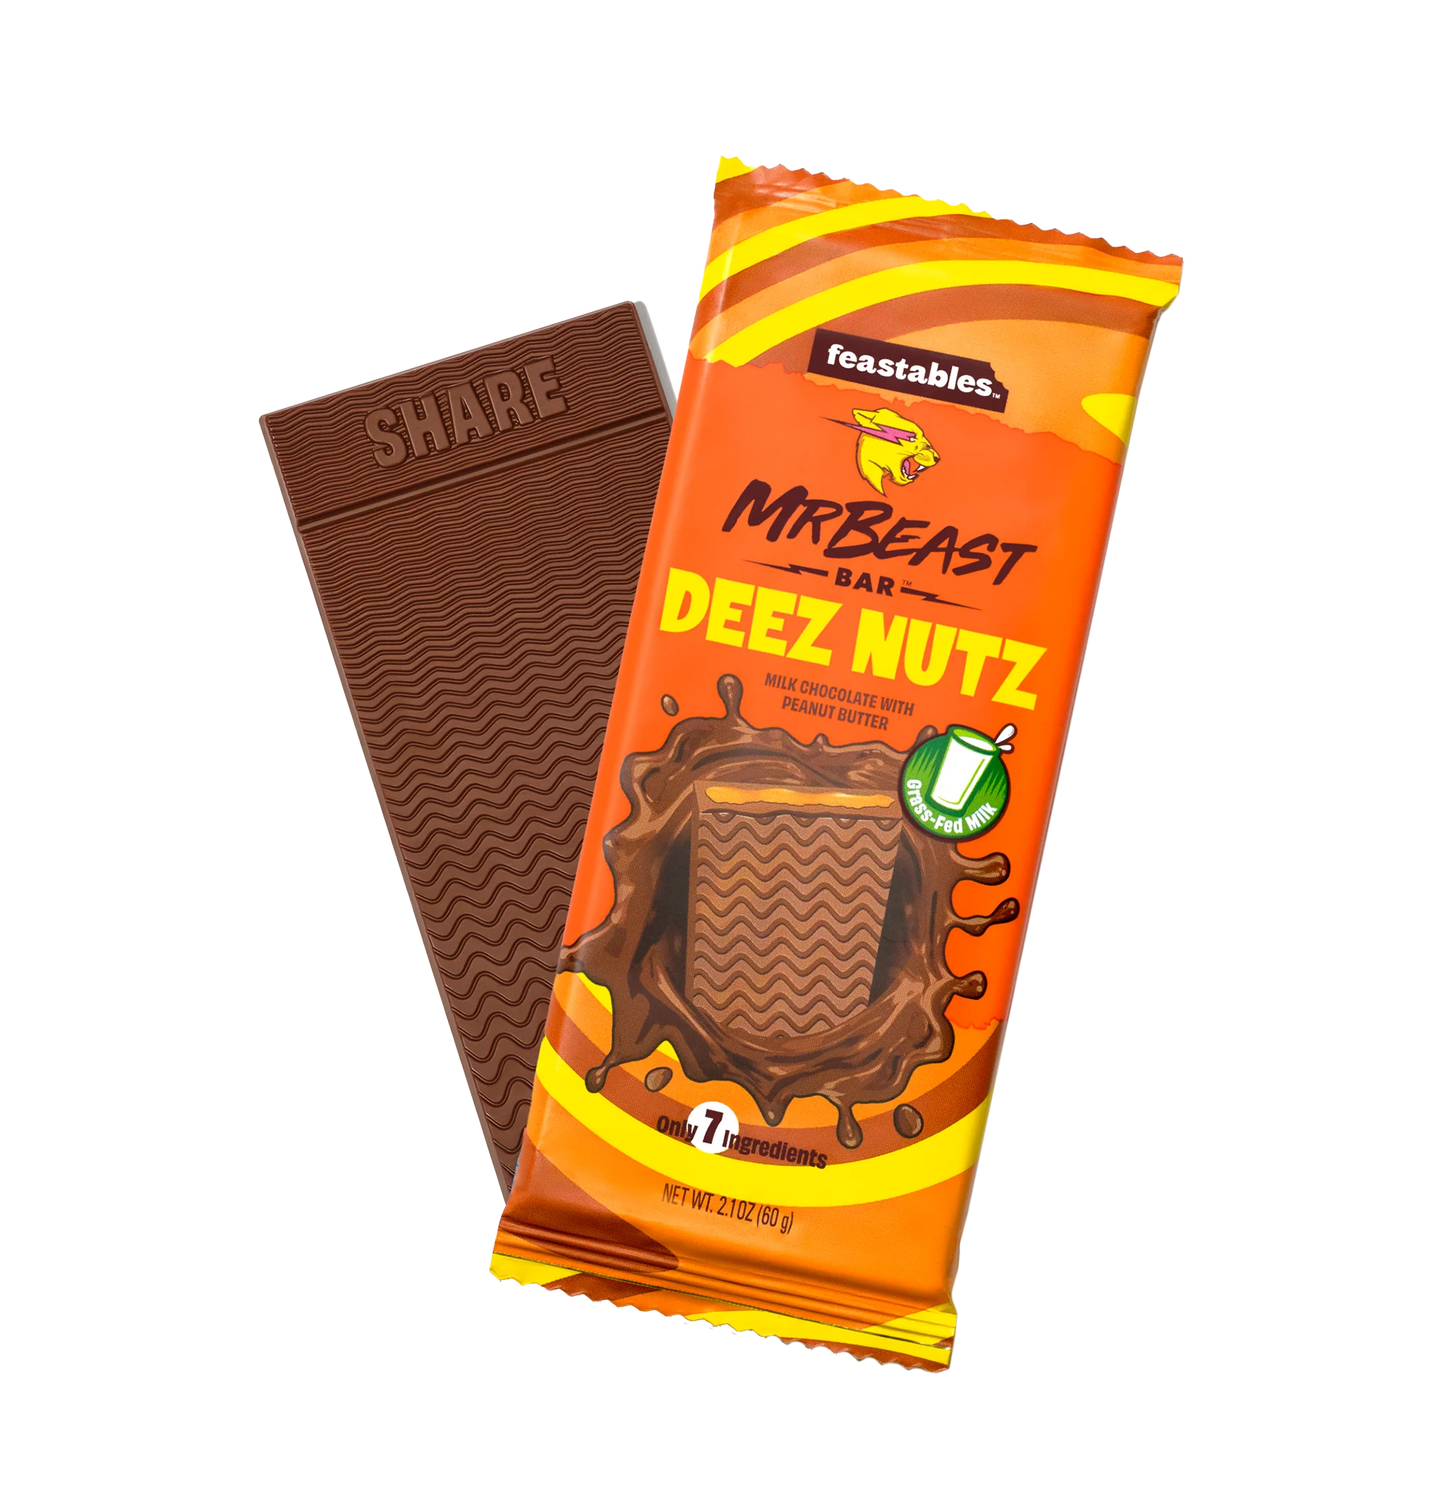 Mr Beast Deez Nutz Chocolate Bar